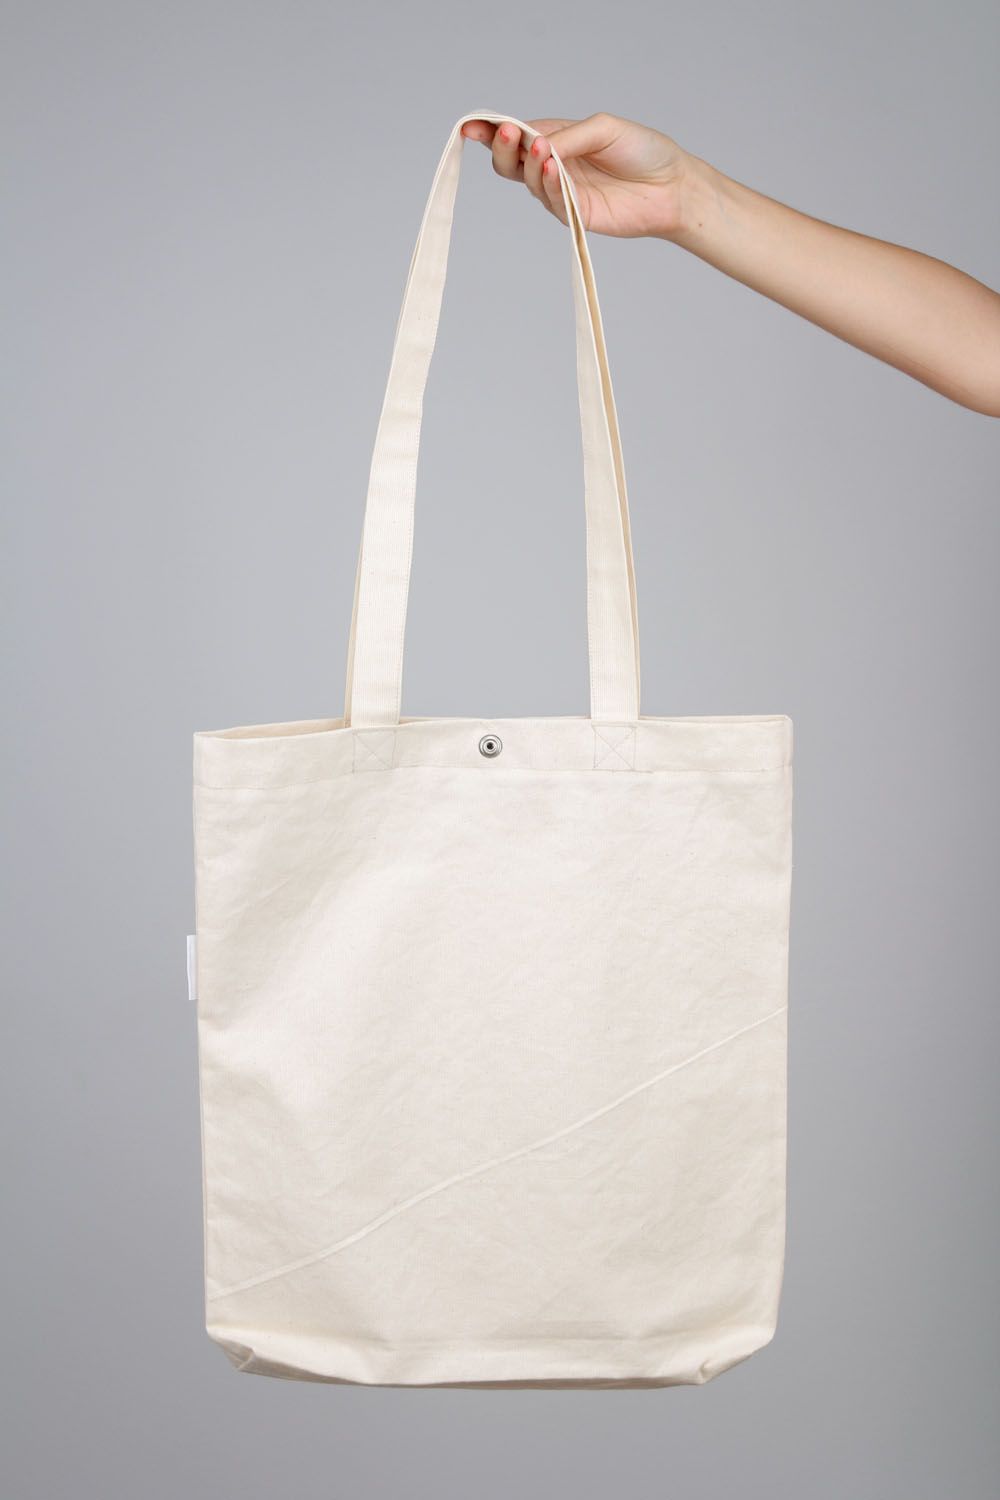 Tasche aus Baumwolle Handarbeit foto 4